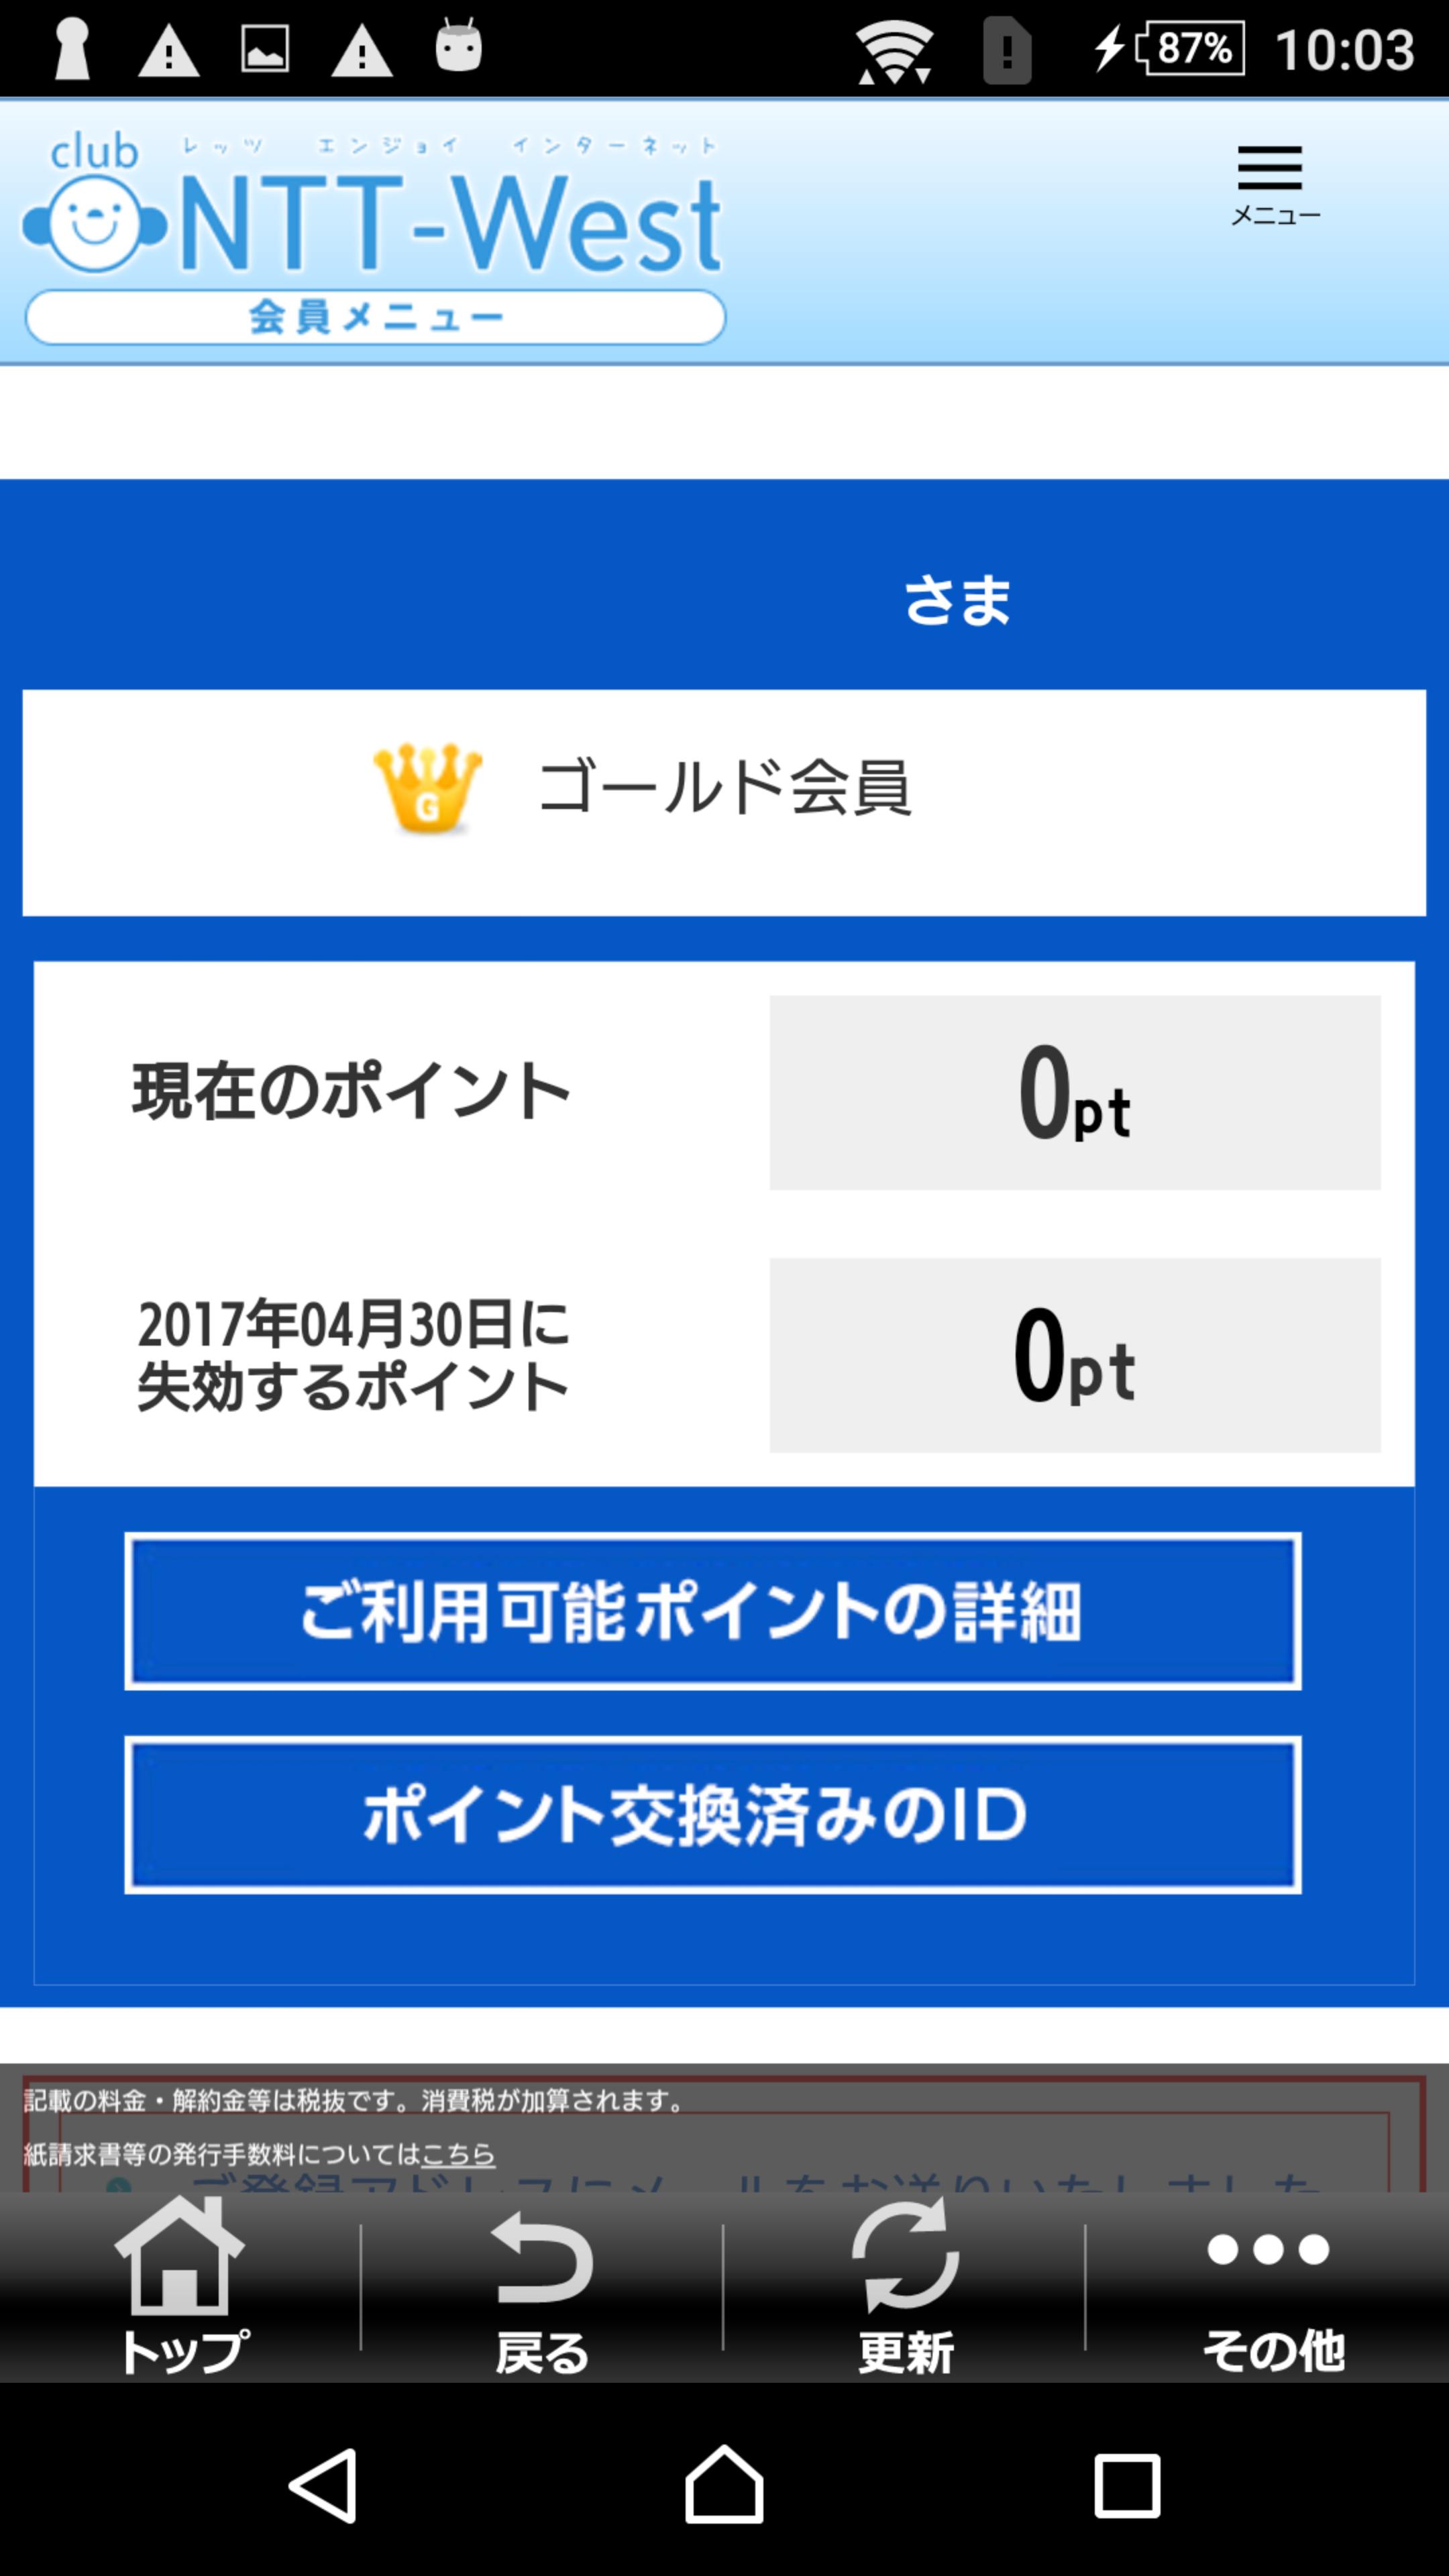 公式 Ntt西日本 Club Ntt Westアプリ For Android Apk Download